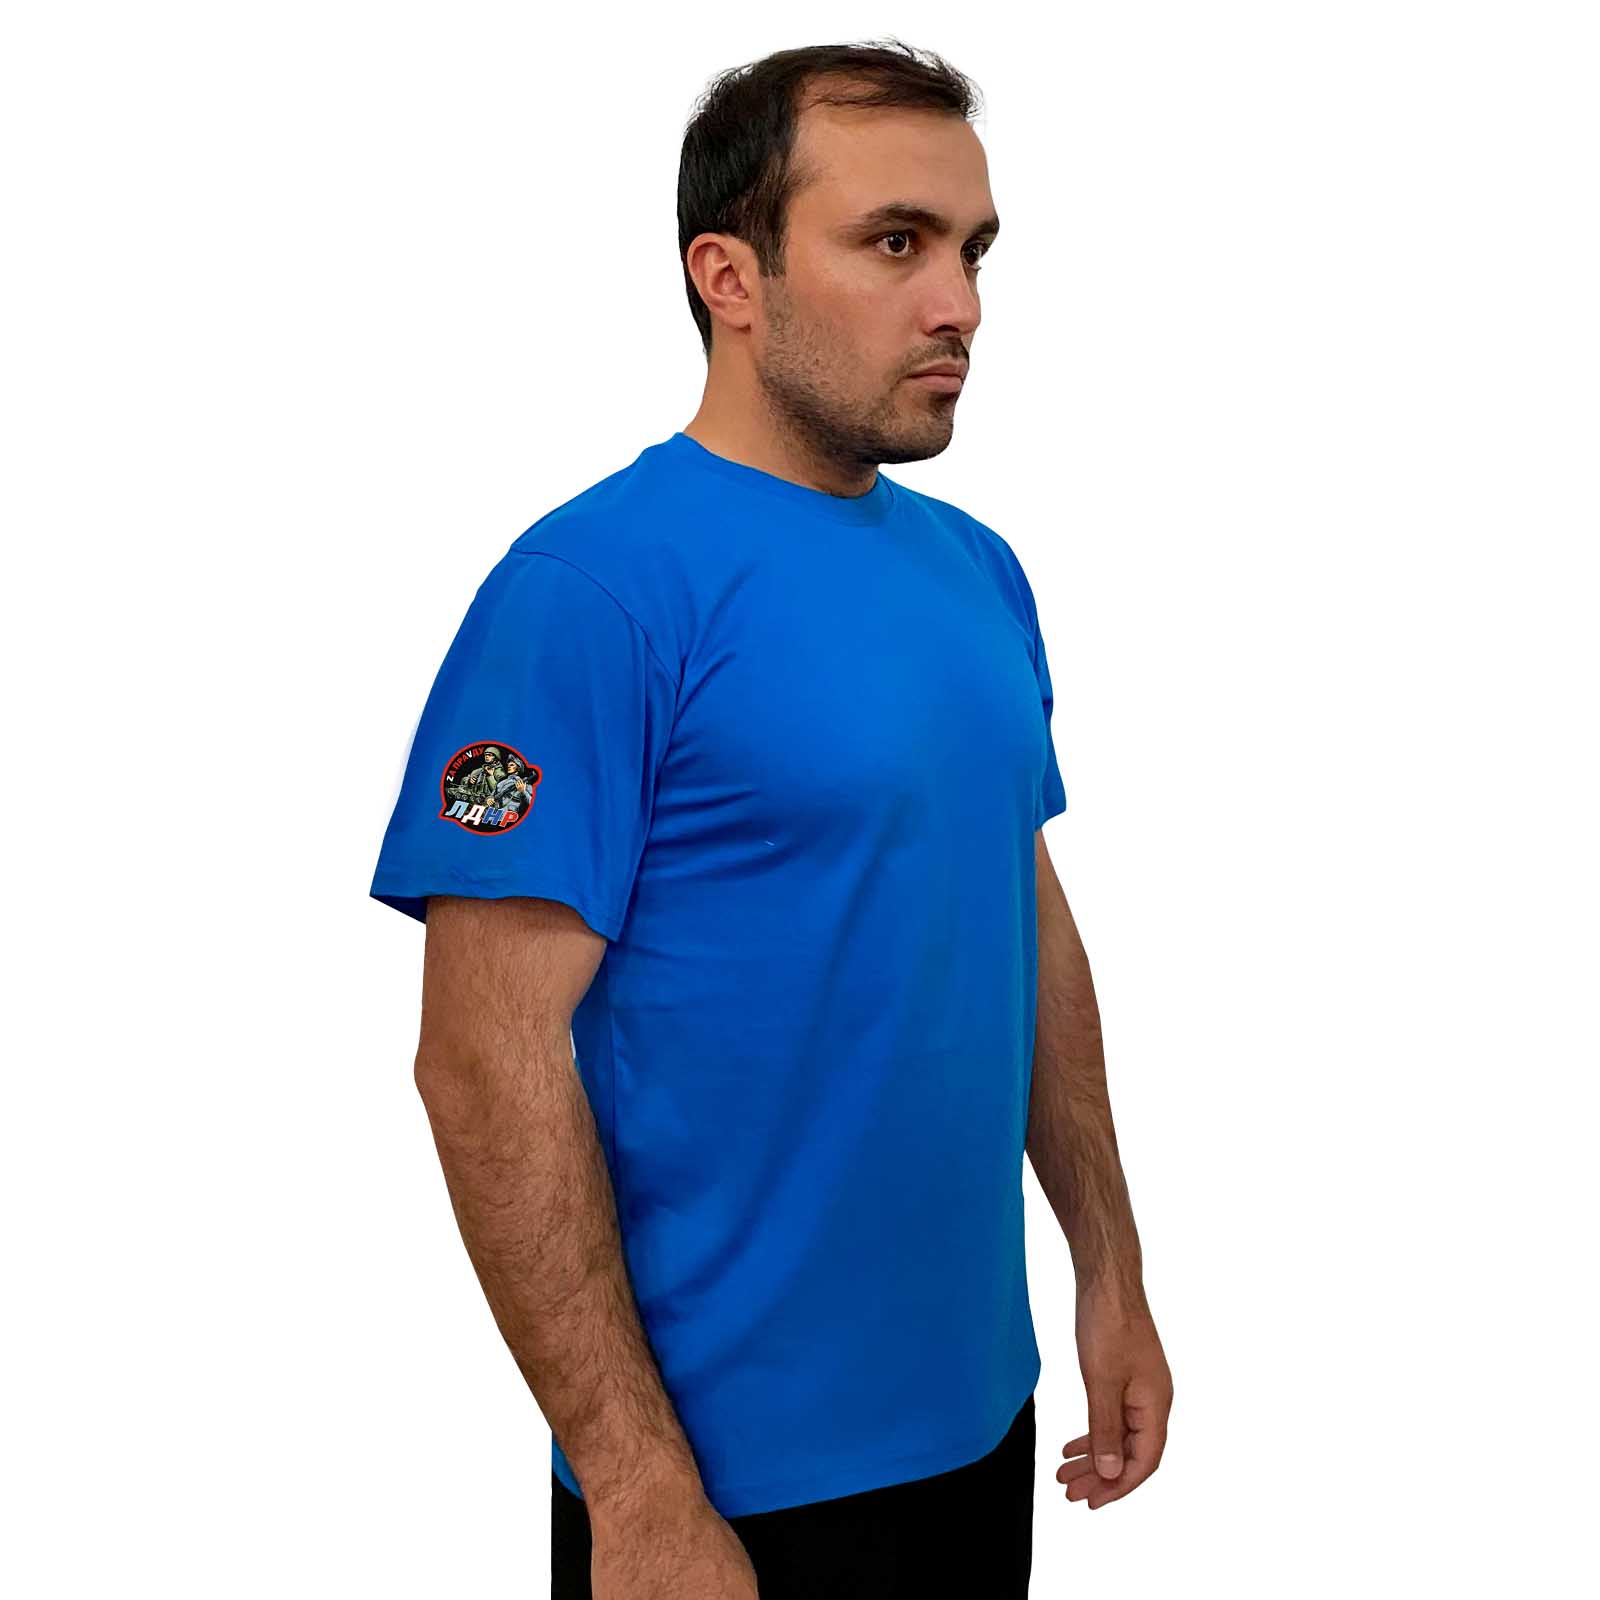 Купить надежную мужскую футболку ЛДНР Zа ПраVду онлайн